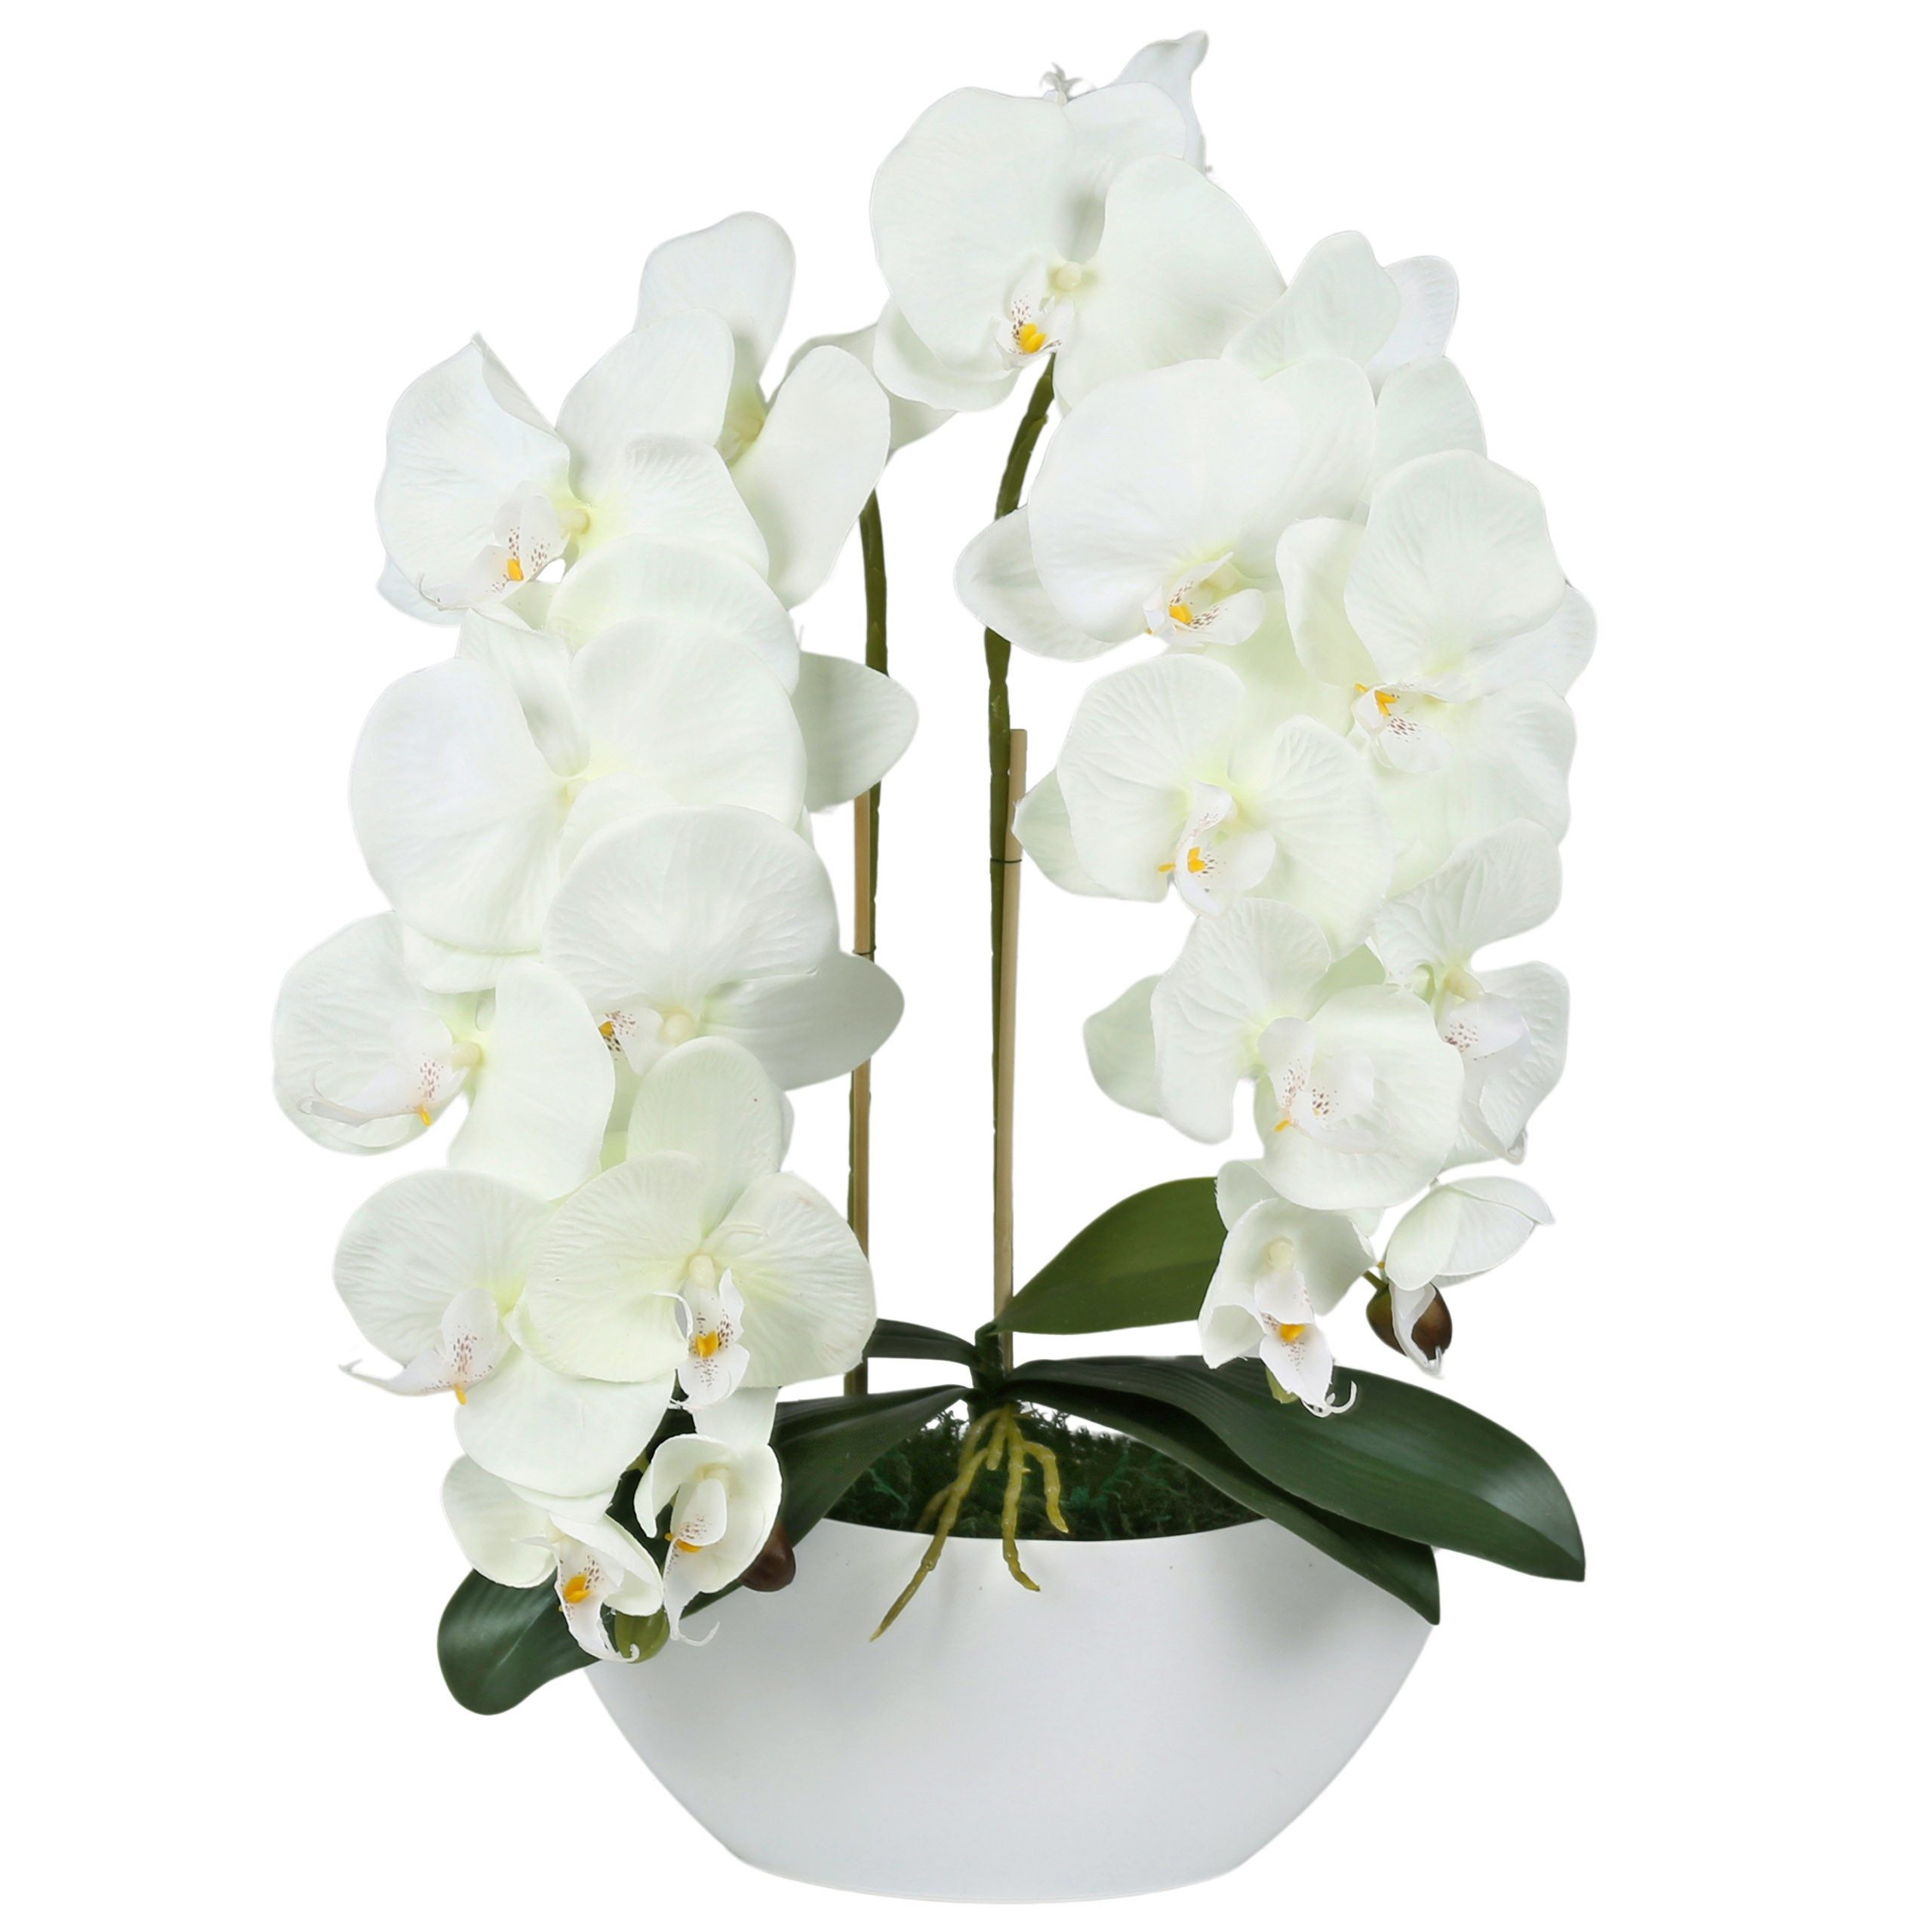 Kunstorchidee Künstliche Orchidee im Topf, ecru, wie lebendig, 2 Stiele 53 cm, Sarcia.eu